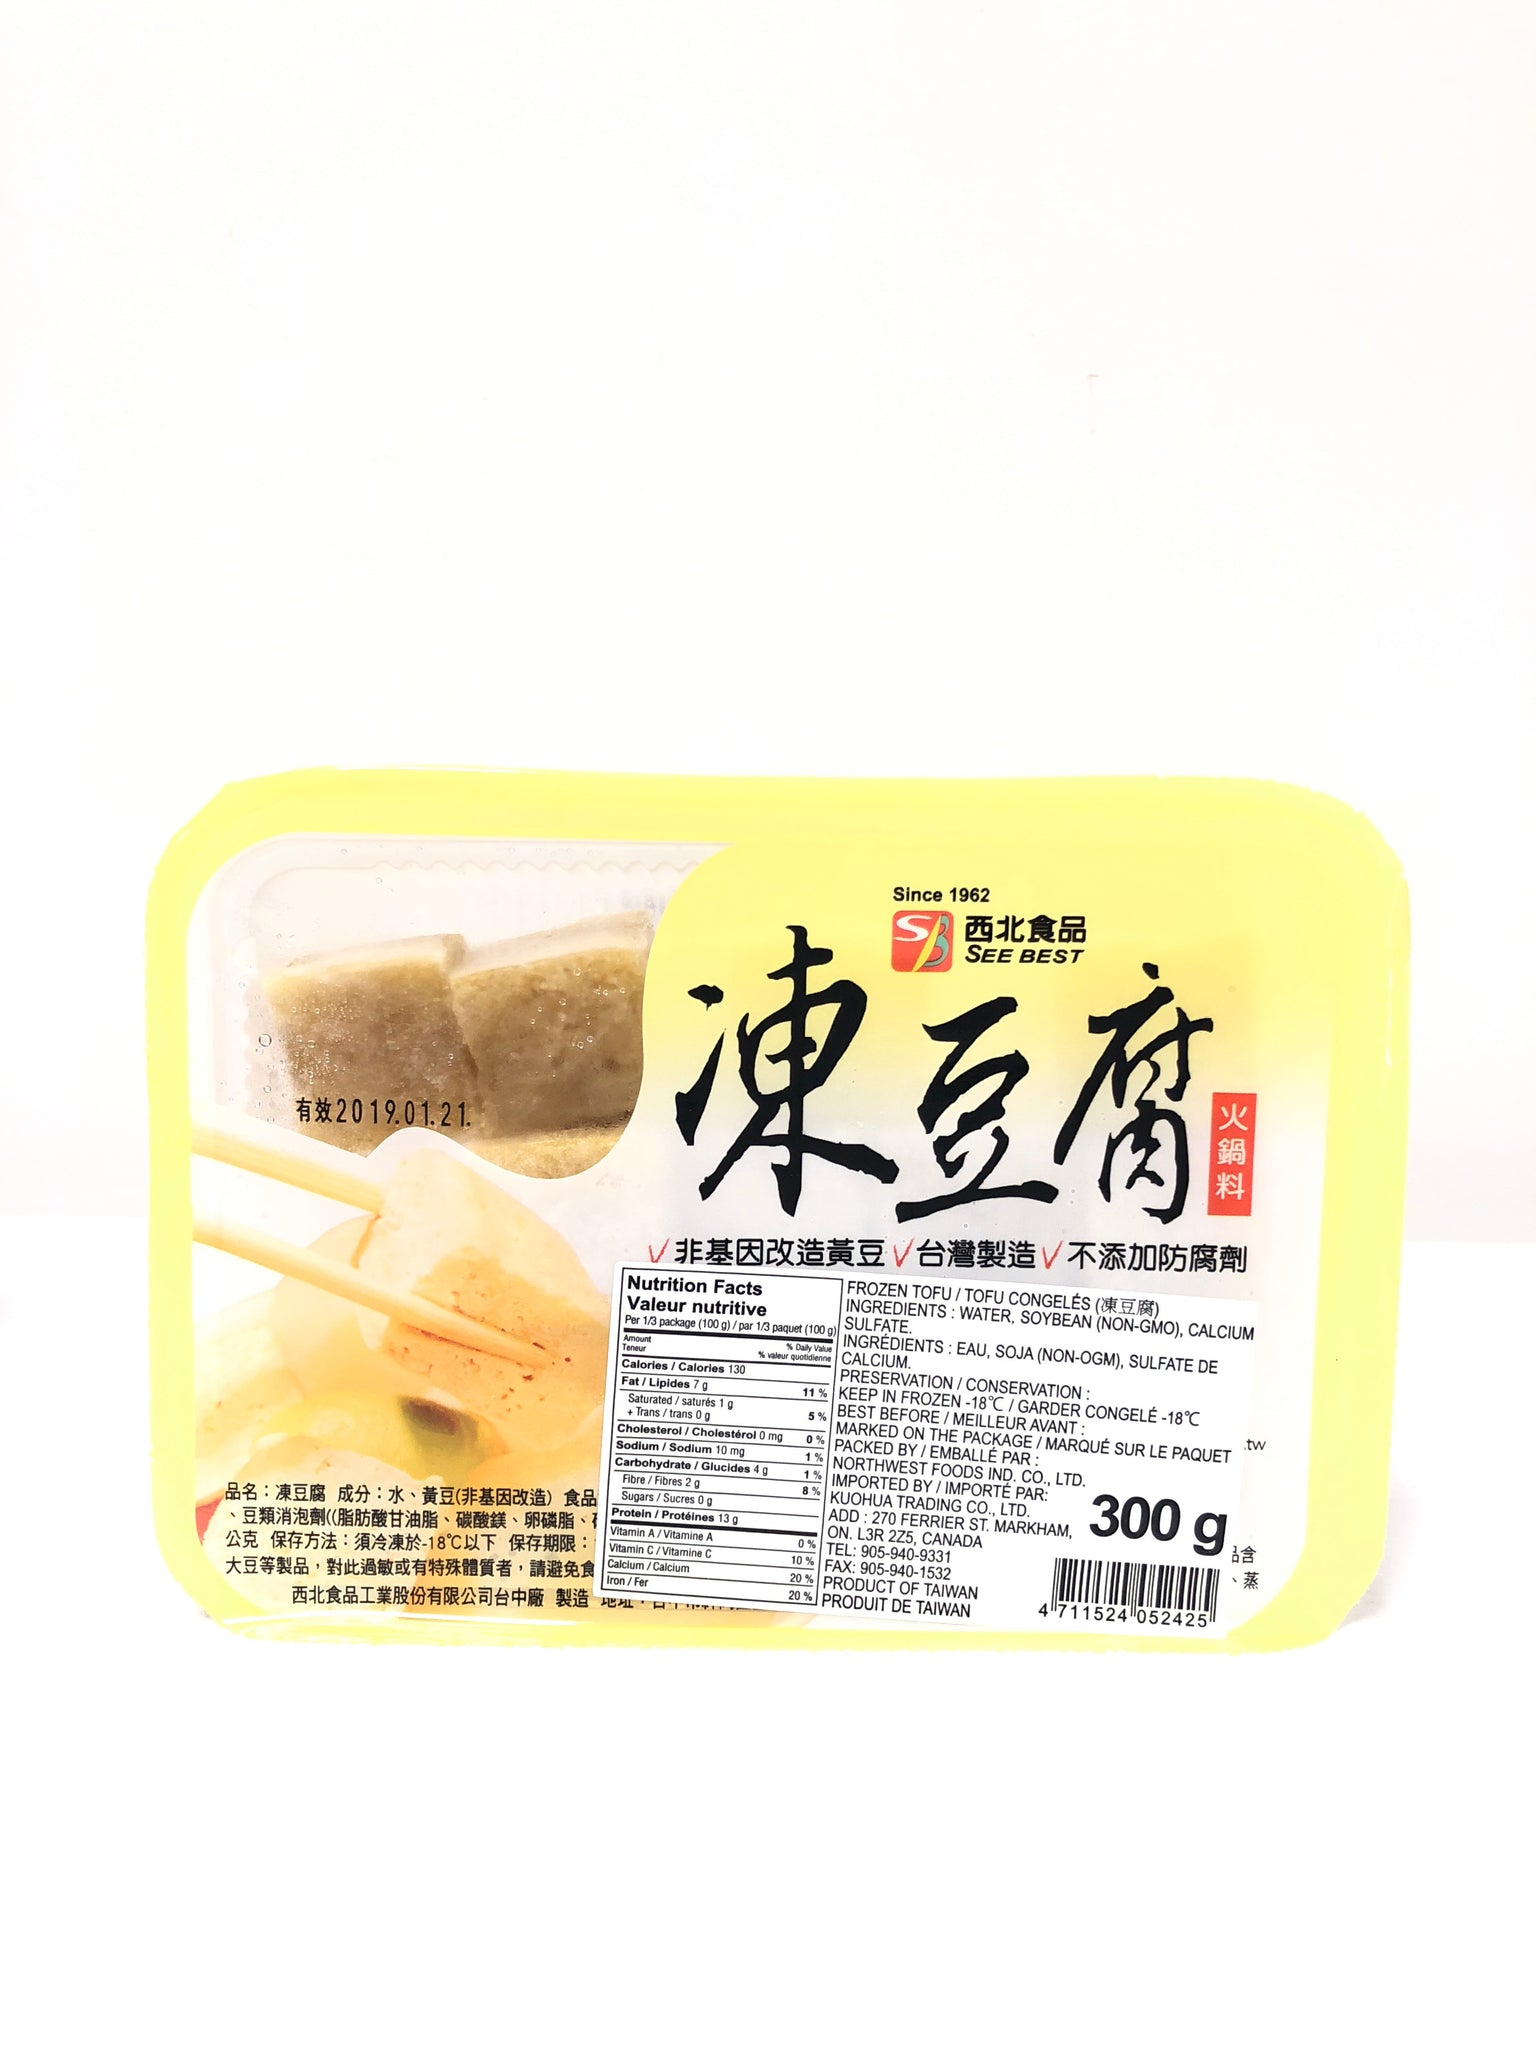 西北火锅冻豆腐300g Xibei Hotpot Frozen Tofu